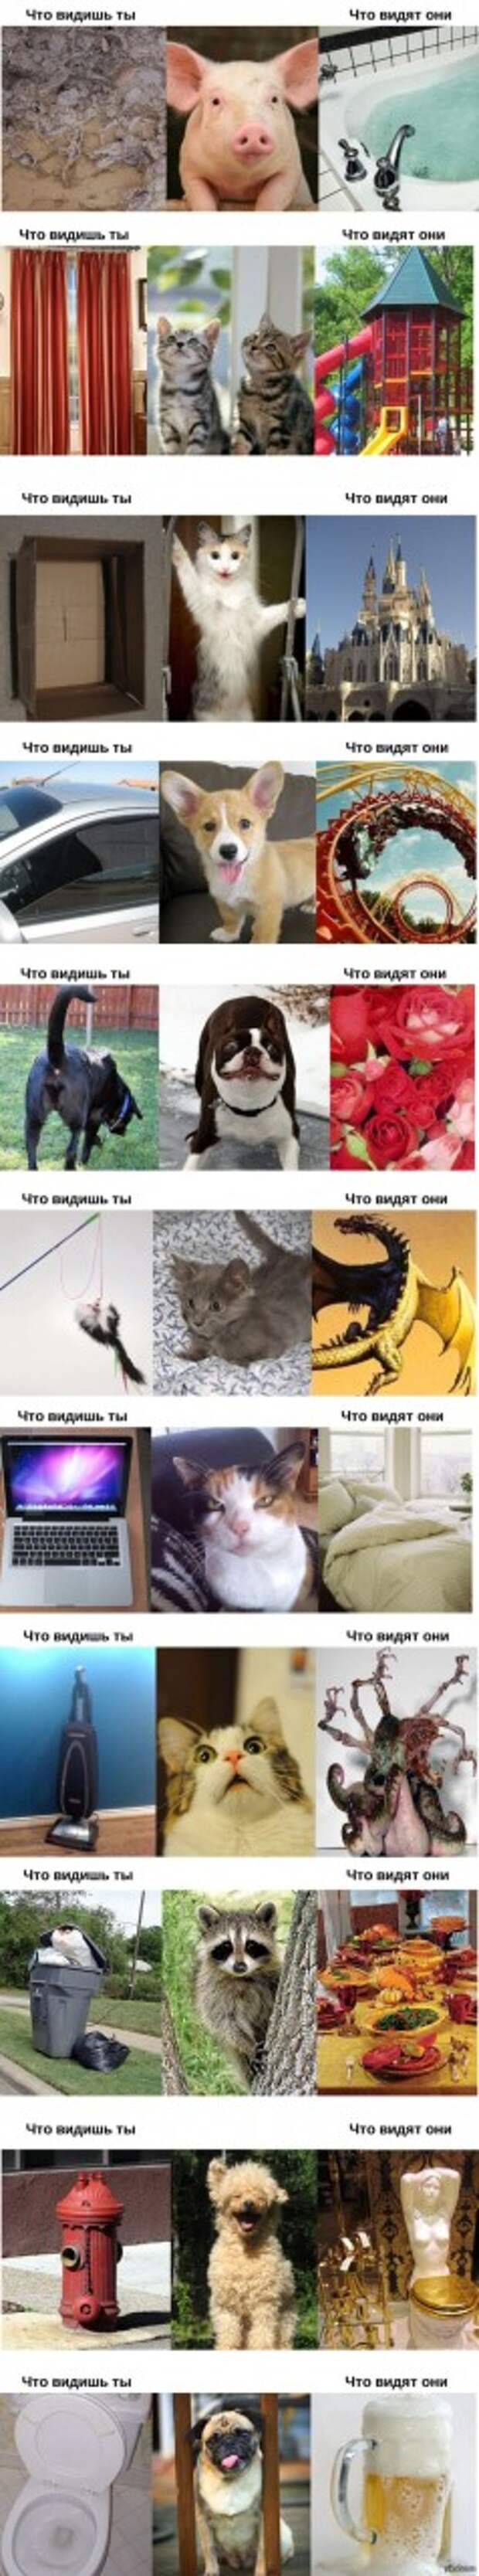 Как видят мир животные